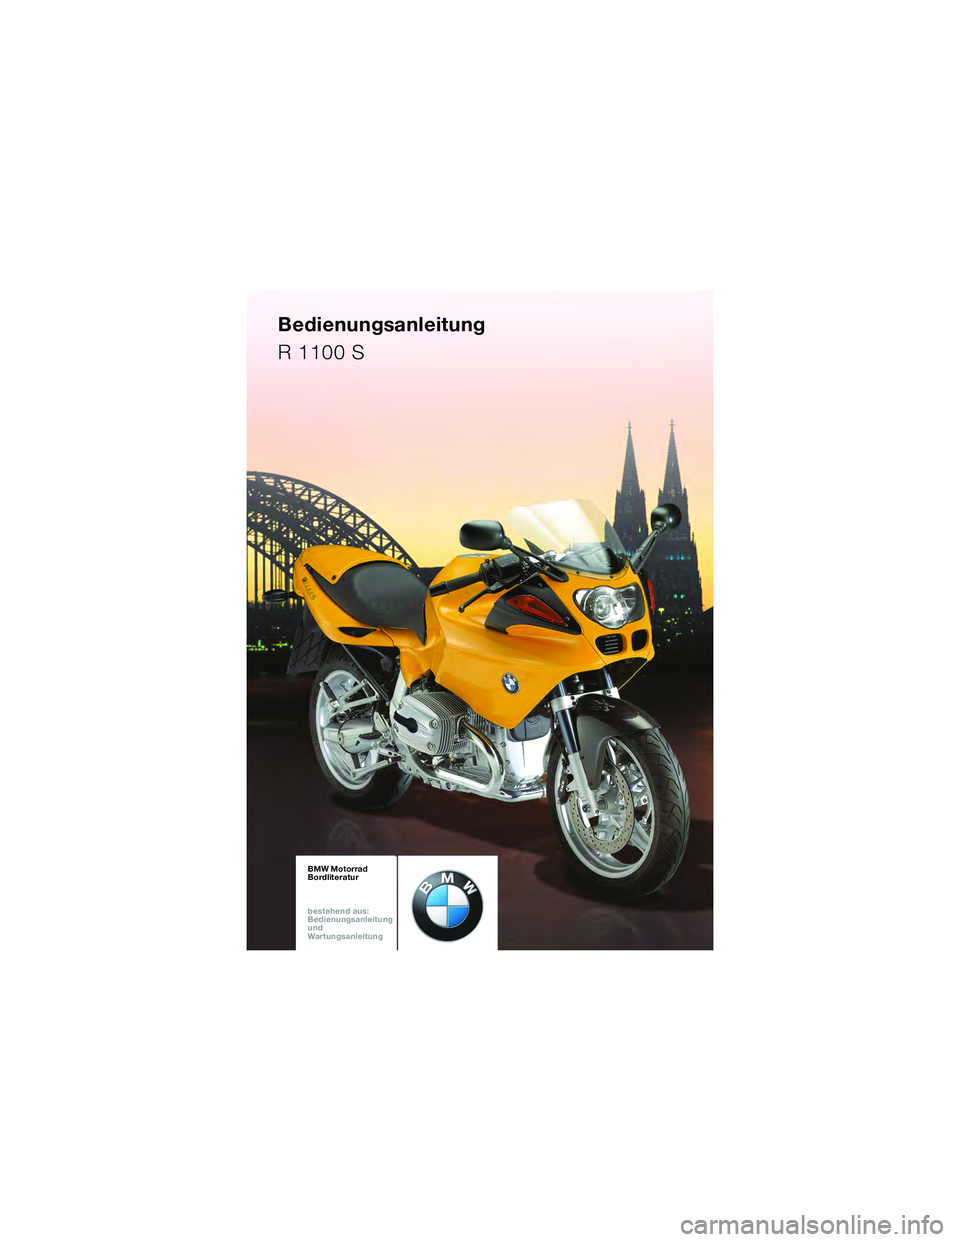 BMW MOTORRAD R 1100 S 2002  Betriebsanleitung (in German) BMW Motorrad
Bordliteratur
bestehen d aus:
Bedienungsanleitung
und
War tungsanleitung \b
.


<< 10sbkd6.bk.fm  Seite 89 Dienstag, 5. April 2005  9:28 09 